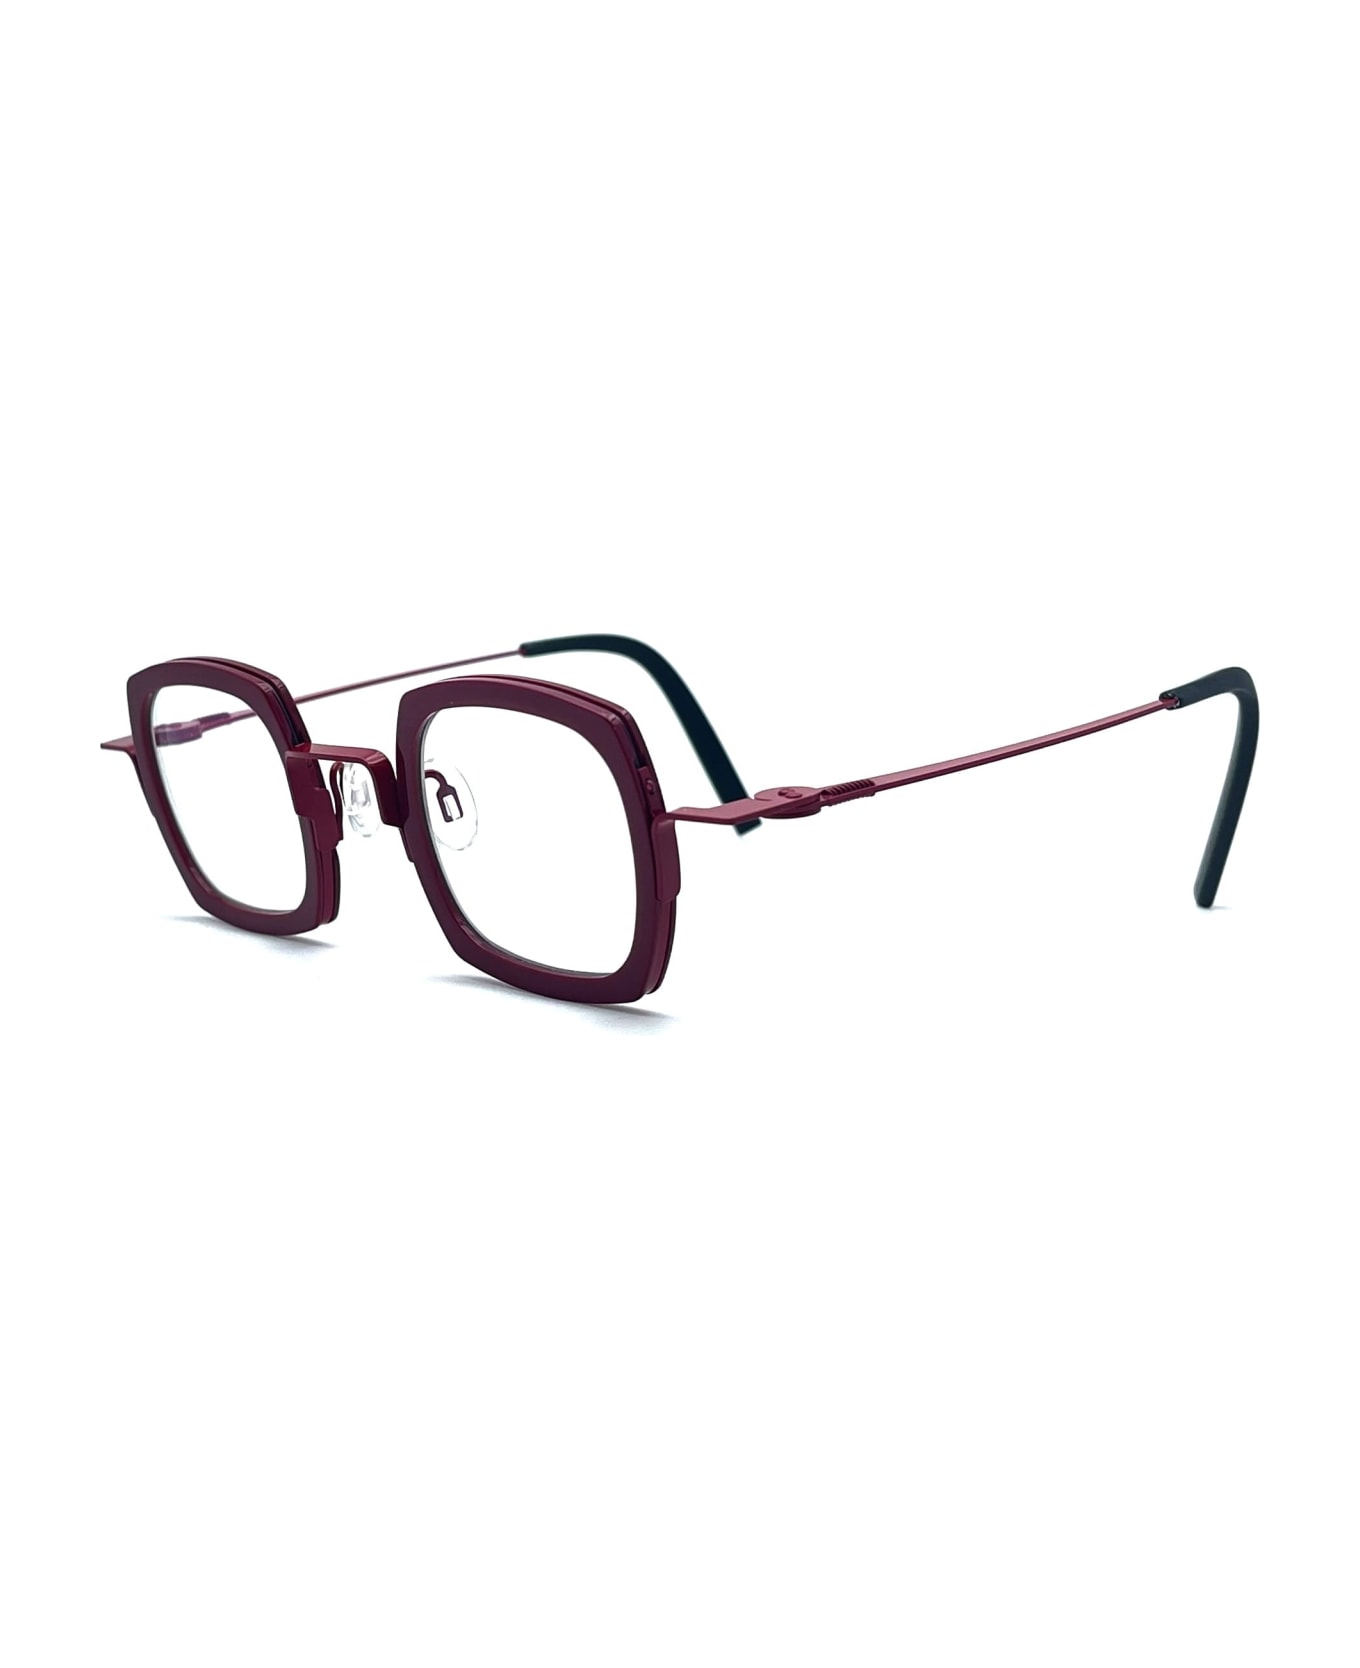 Theo Eyewear Broccoli - 48 Glasses - burgundy アイウェア